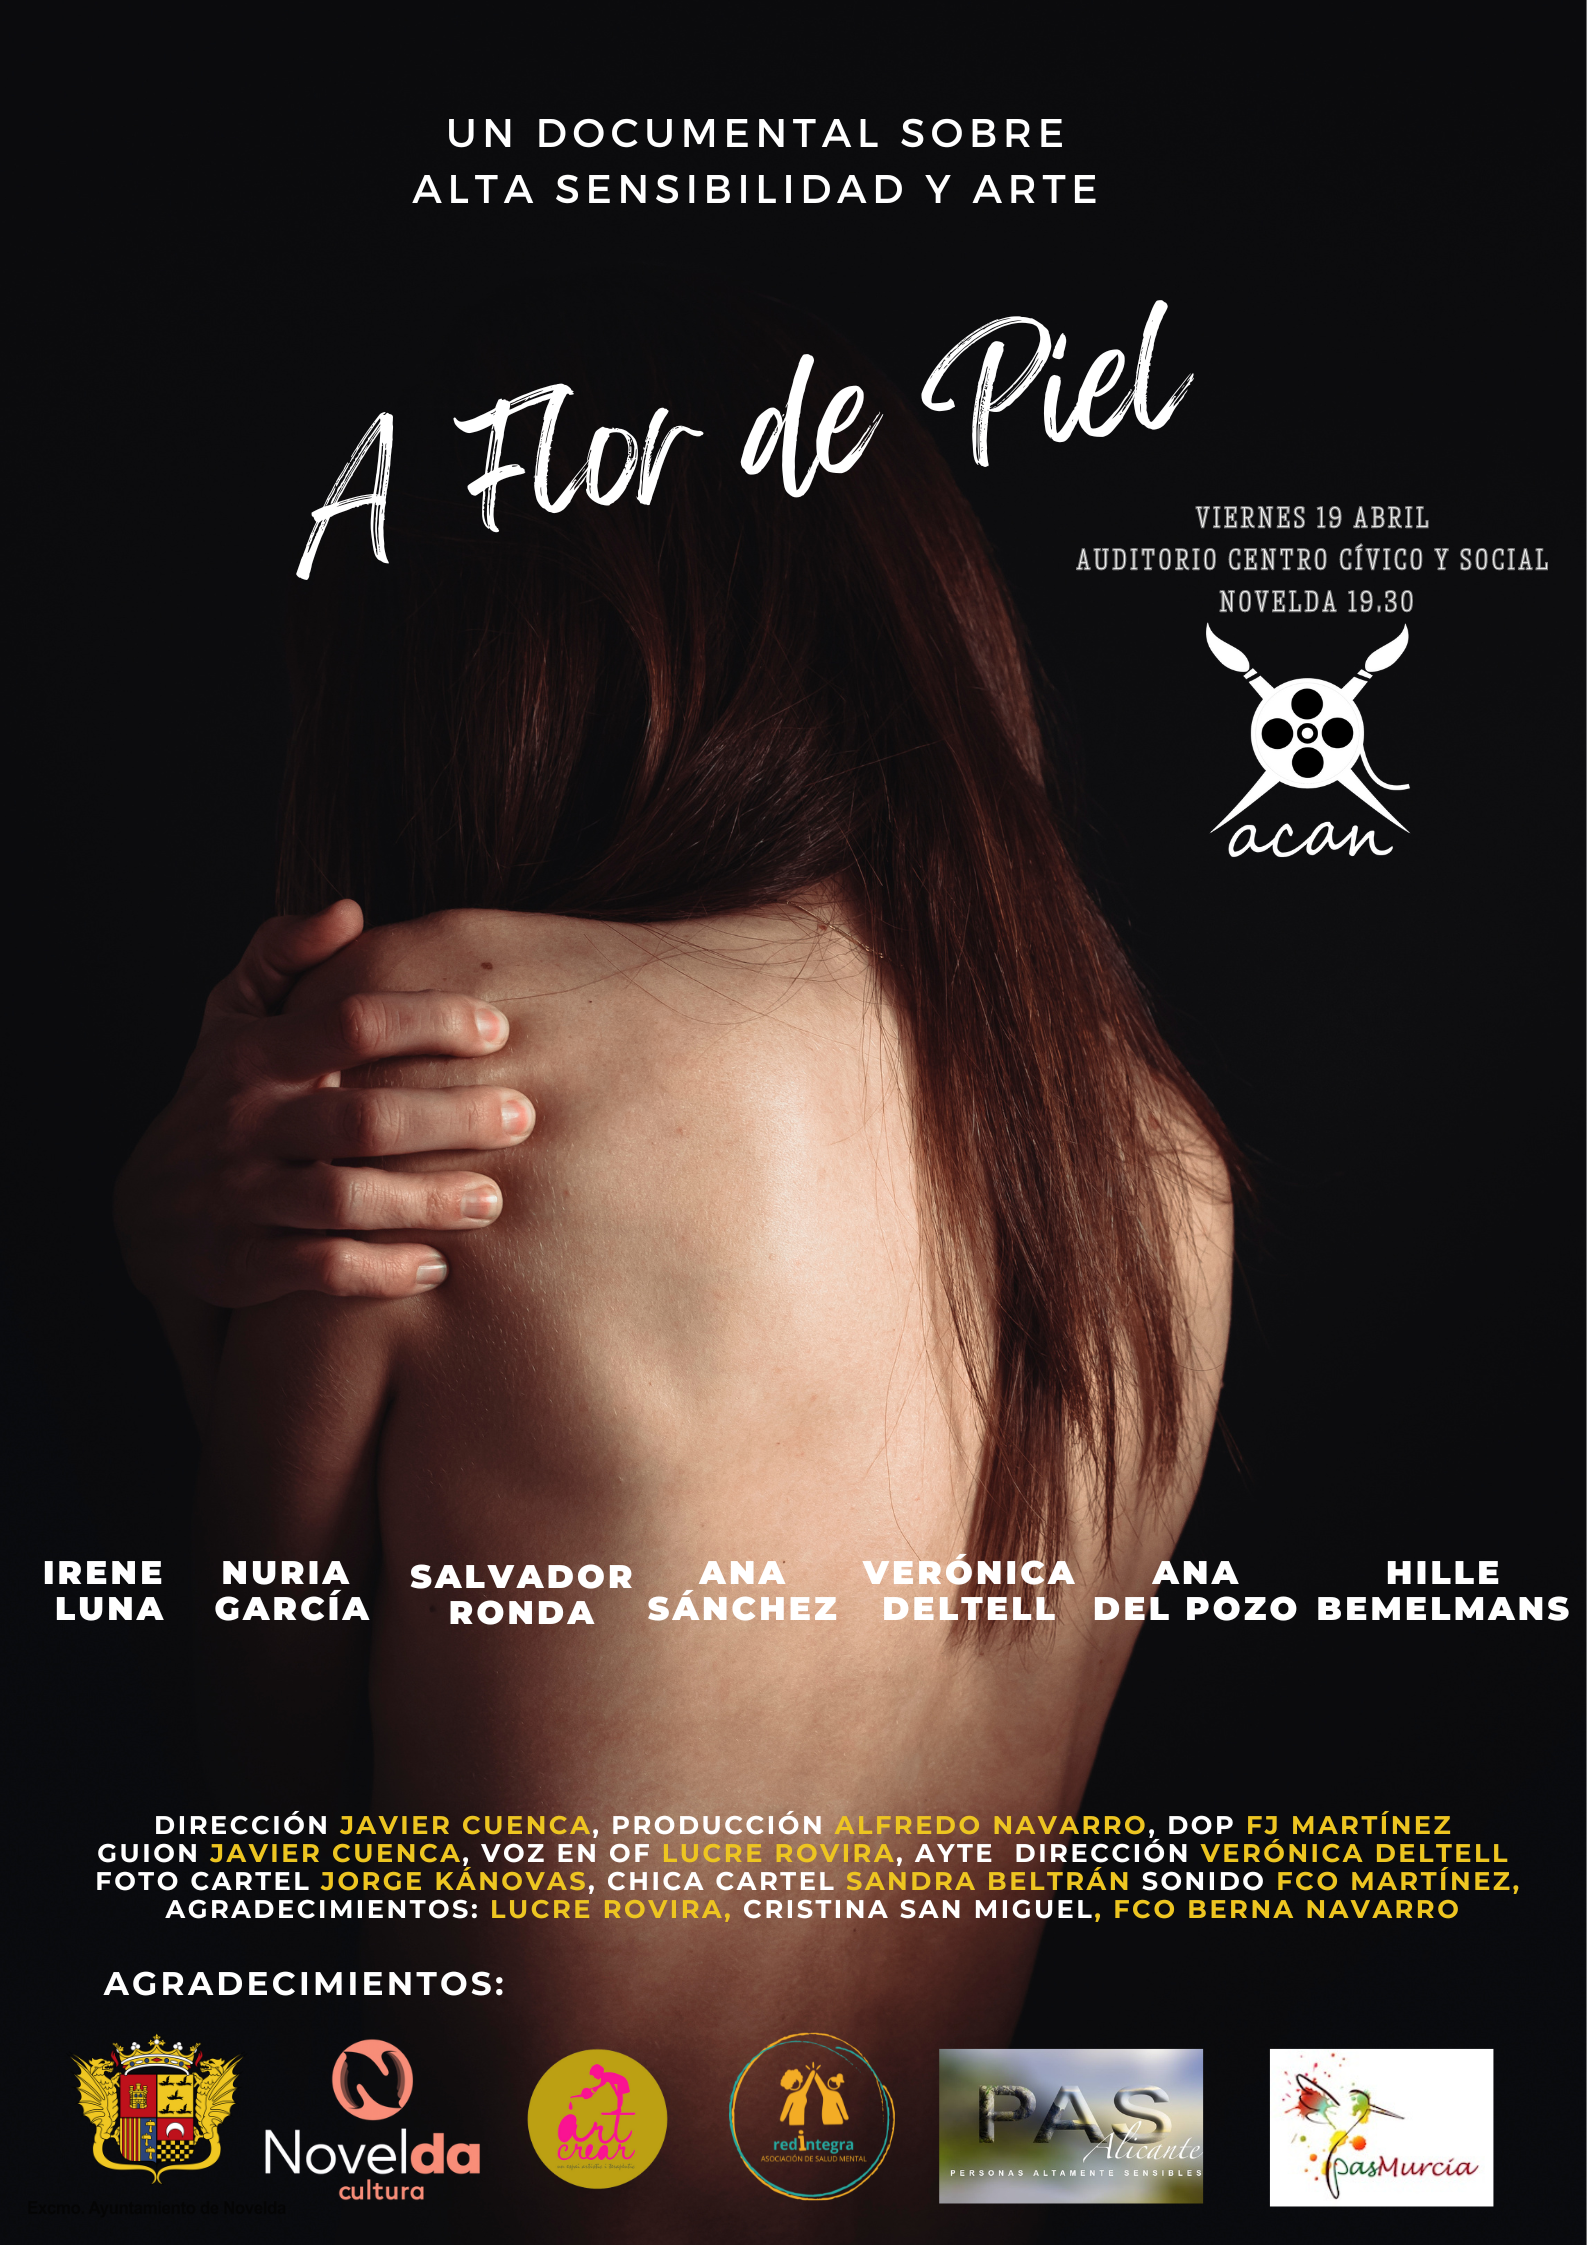 Ayuntamiento de Novelda Aflordepiel_Cartel Estreno del cortometraje “A flor de Piel” 